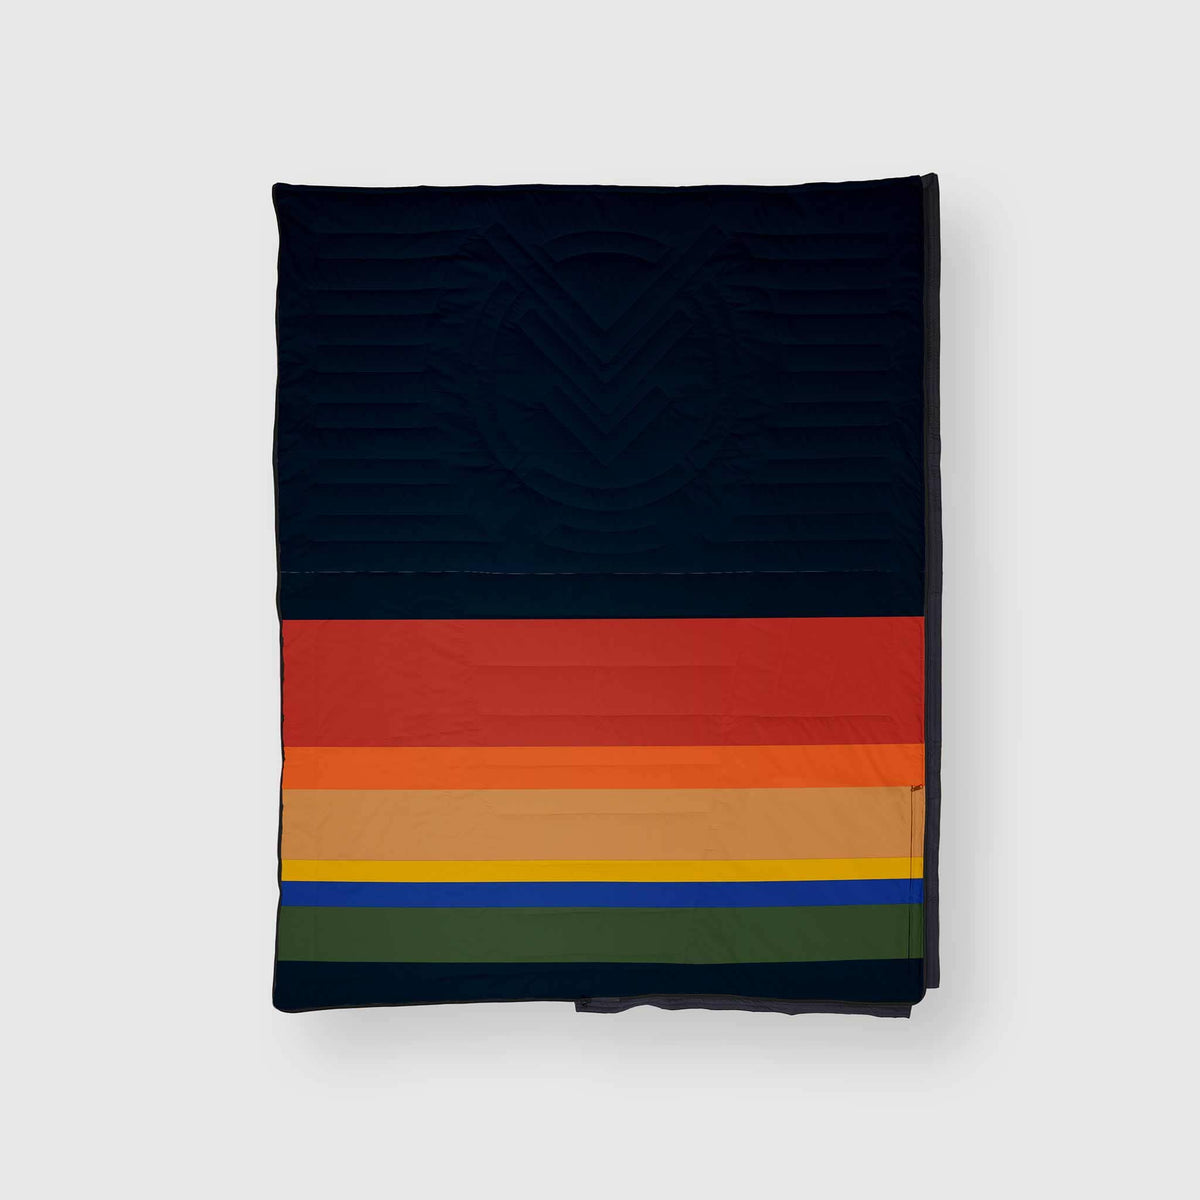 VOITED Slumber Zip Sack Blanket - Origin